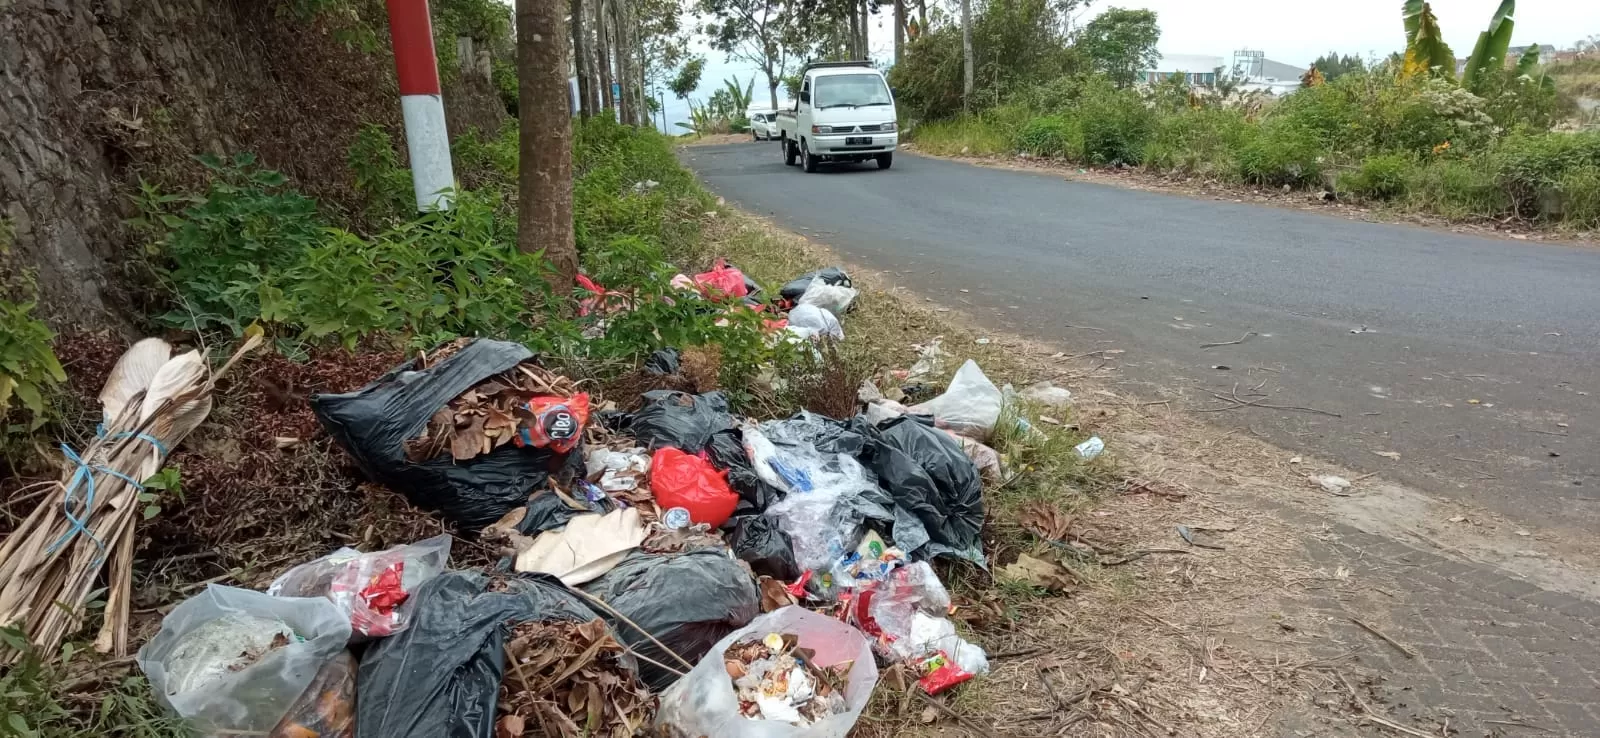 Jalan Di Kota Batu Banyak Dijadikan Tempat Membuang Sampah Oleh Masyarakat